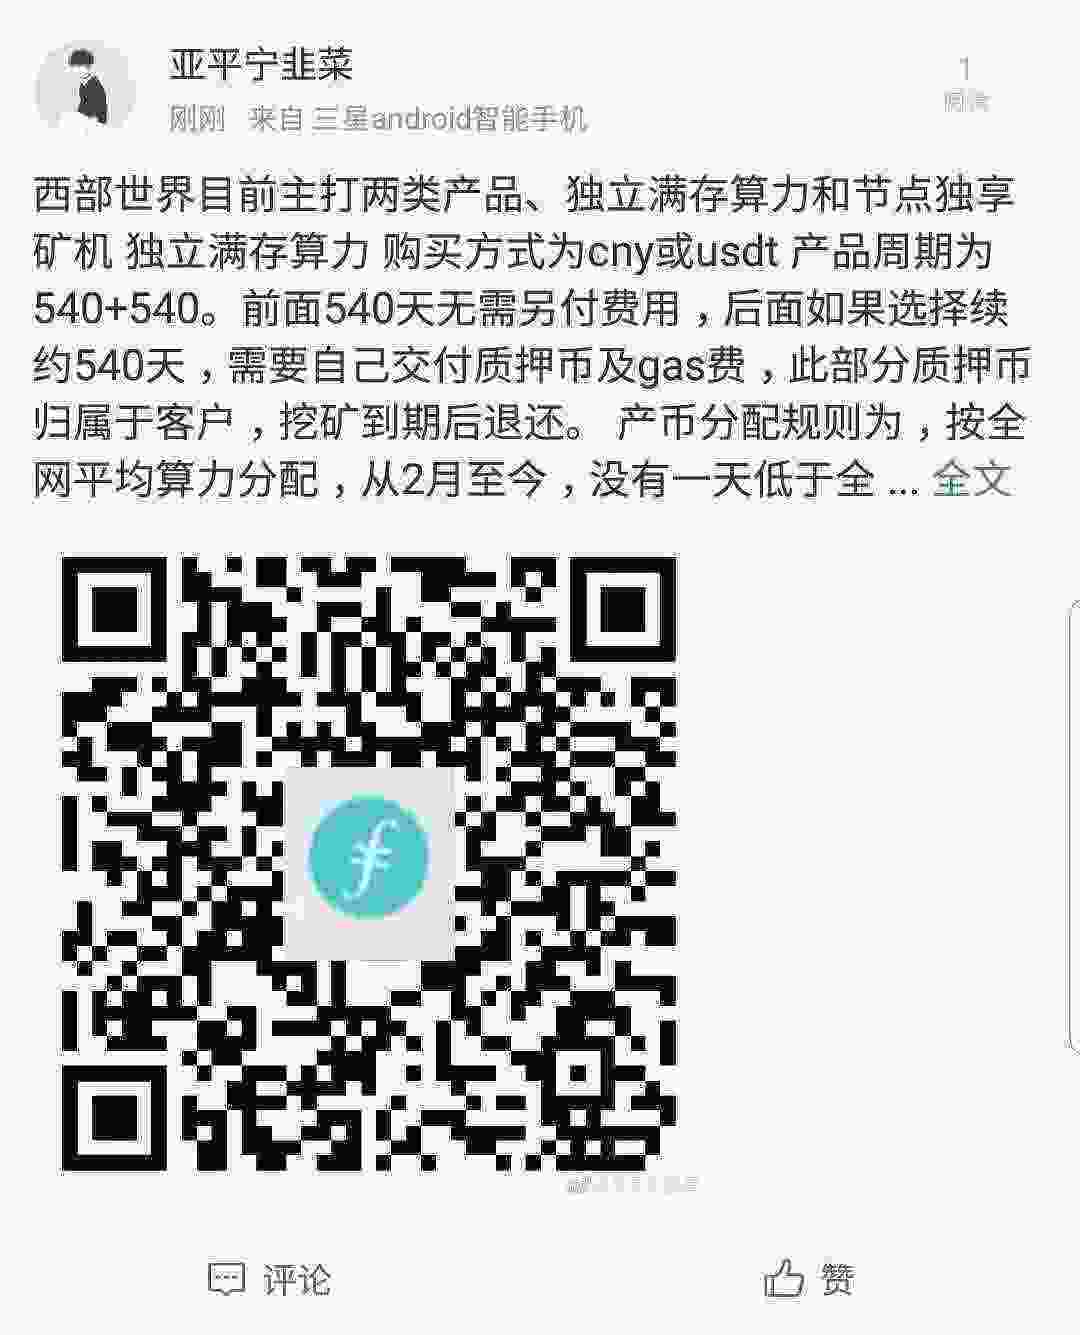 SmartSelect_20210428-153313_Weibo.jpg